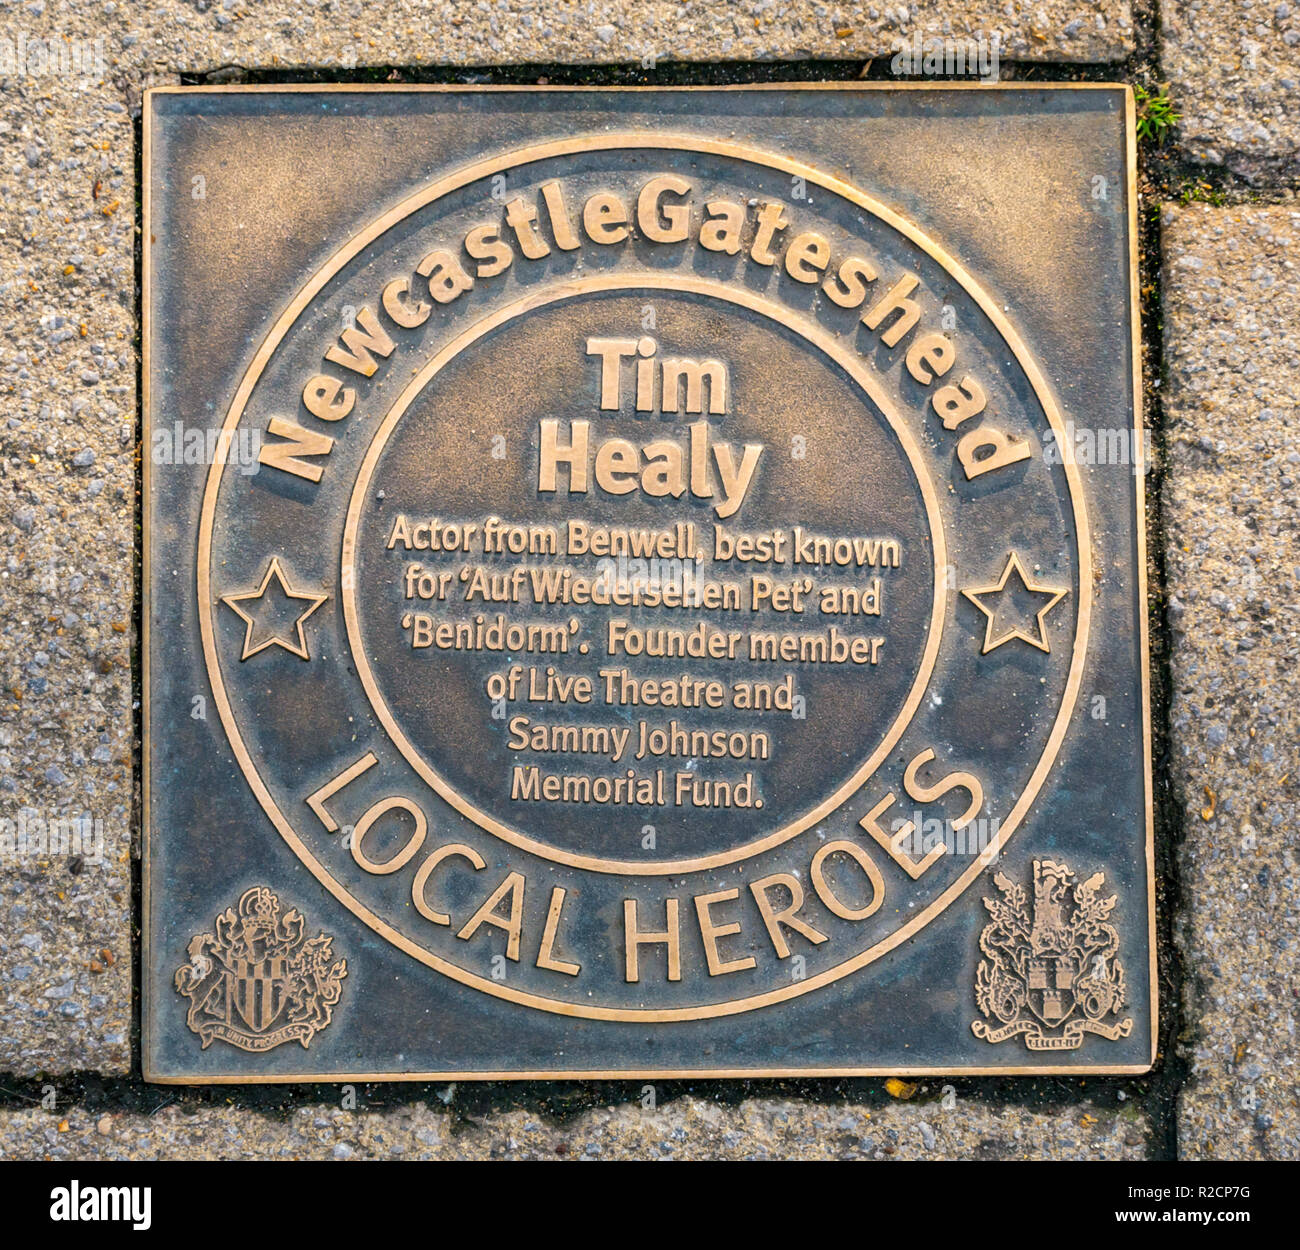 Plaque de bronze en l'honneur et Newcastle Gateshead inspirant les gens de ces 60 dernières années, Tim Healy, quai. Newcastle Upon Tyne, England, UK Banque D'Images